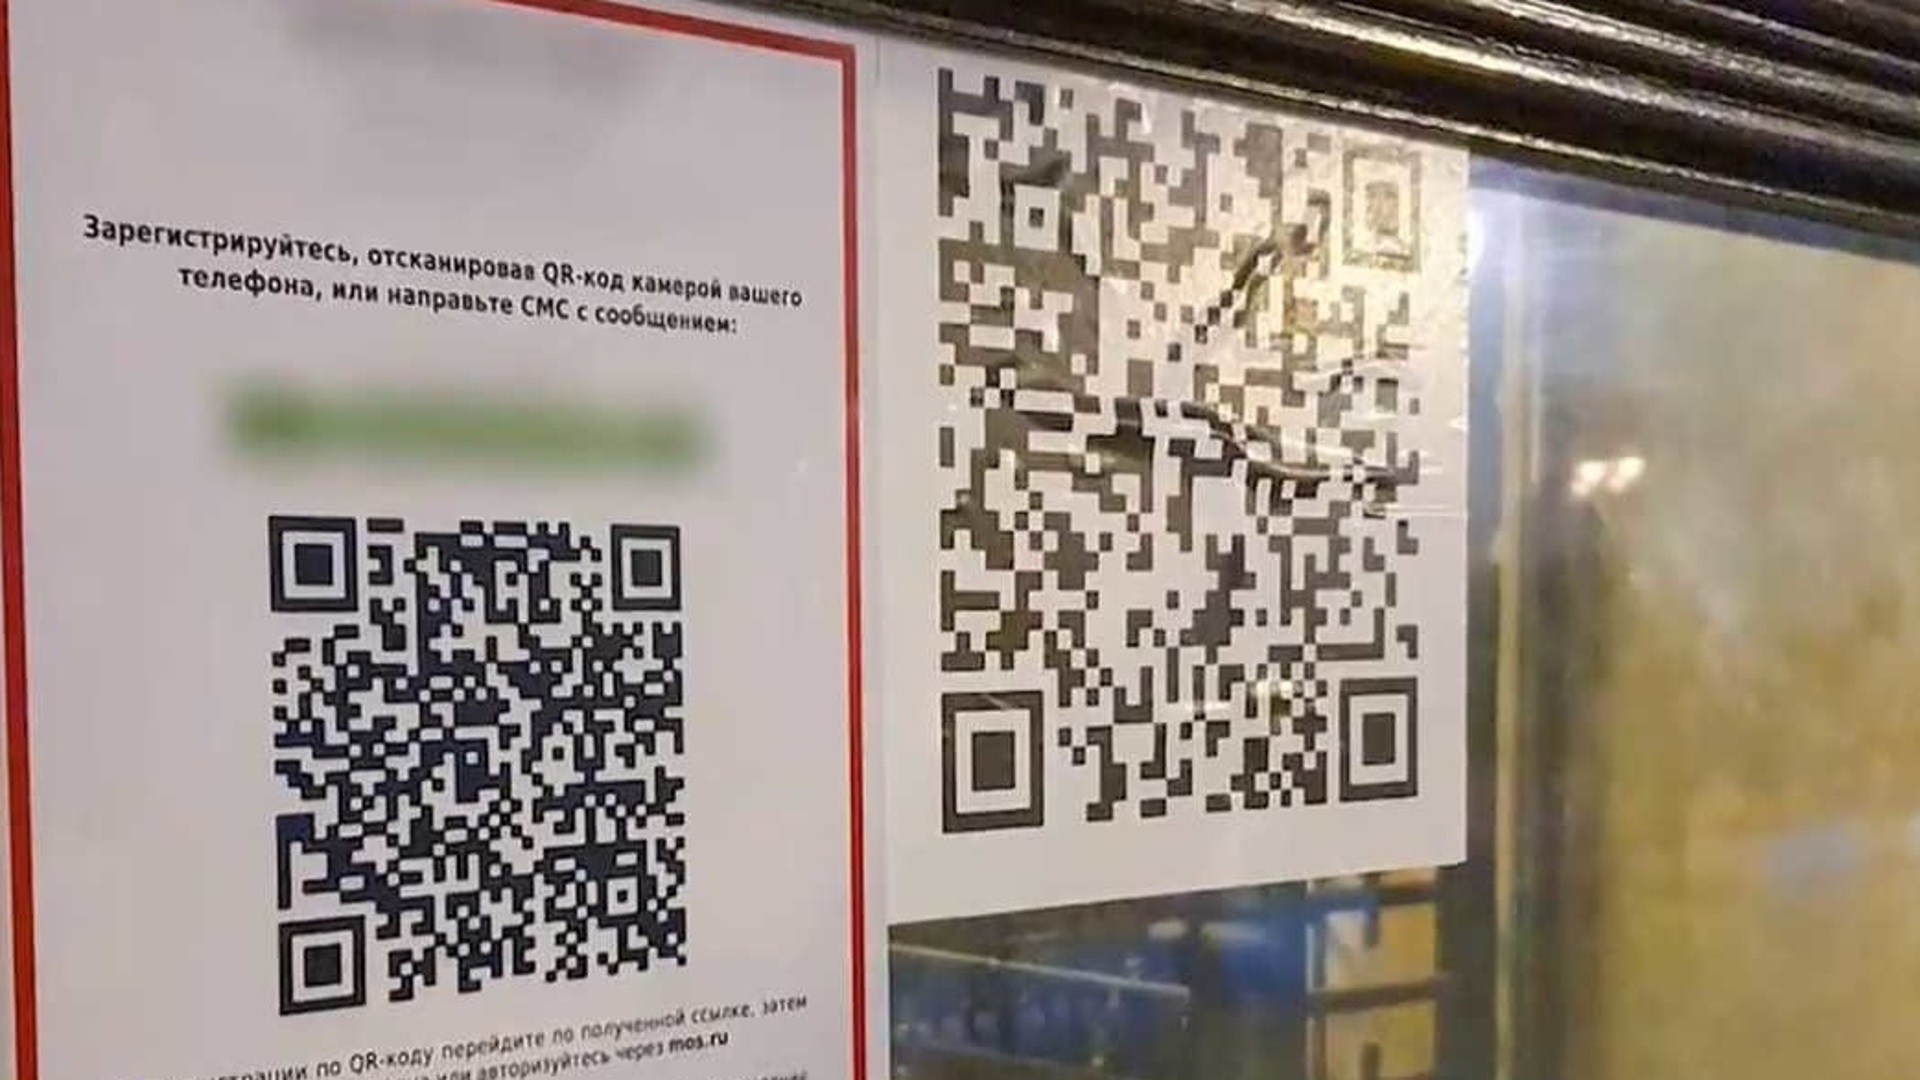 QR код для посещения кафе в Ростове на Дону